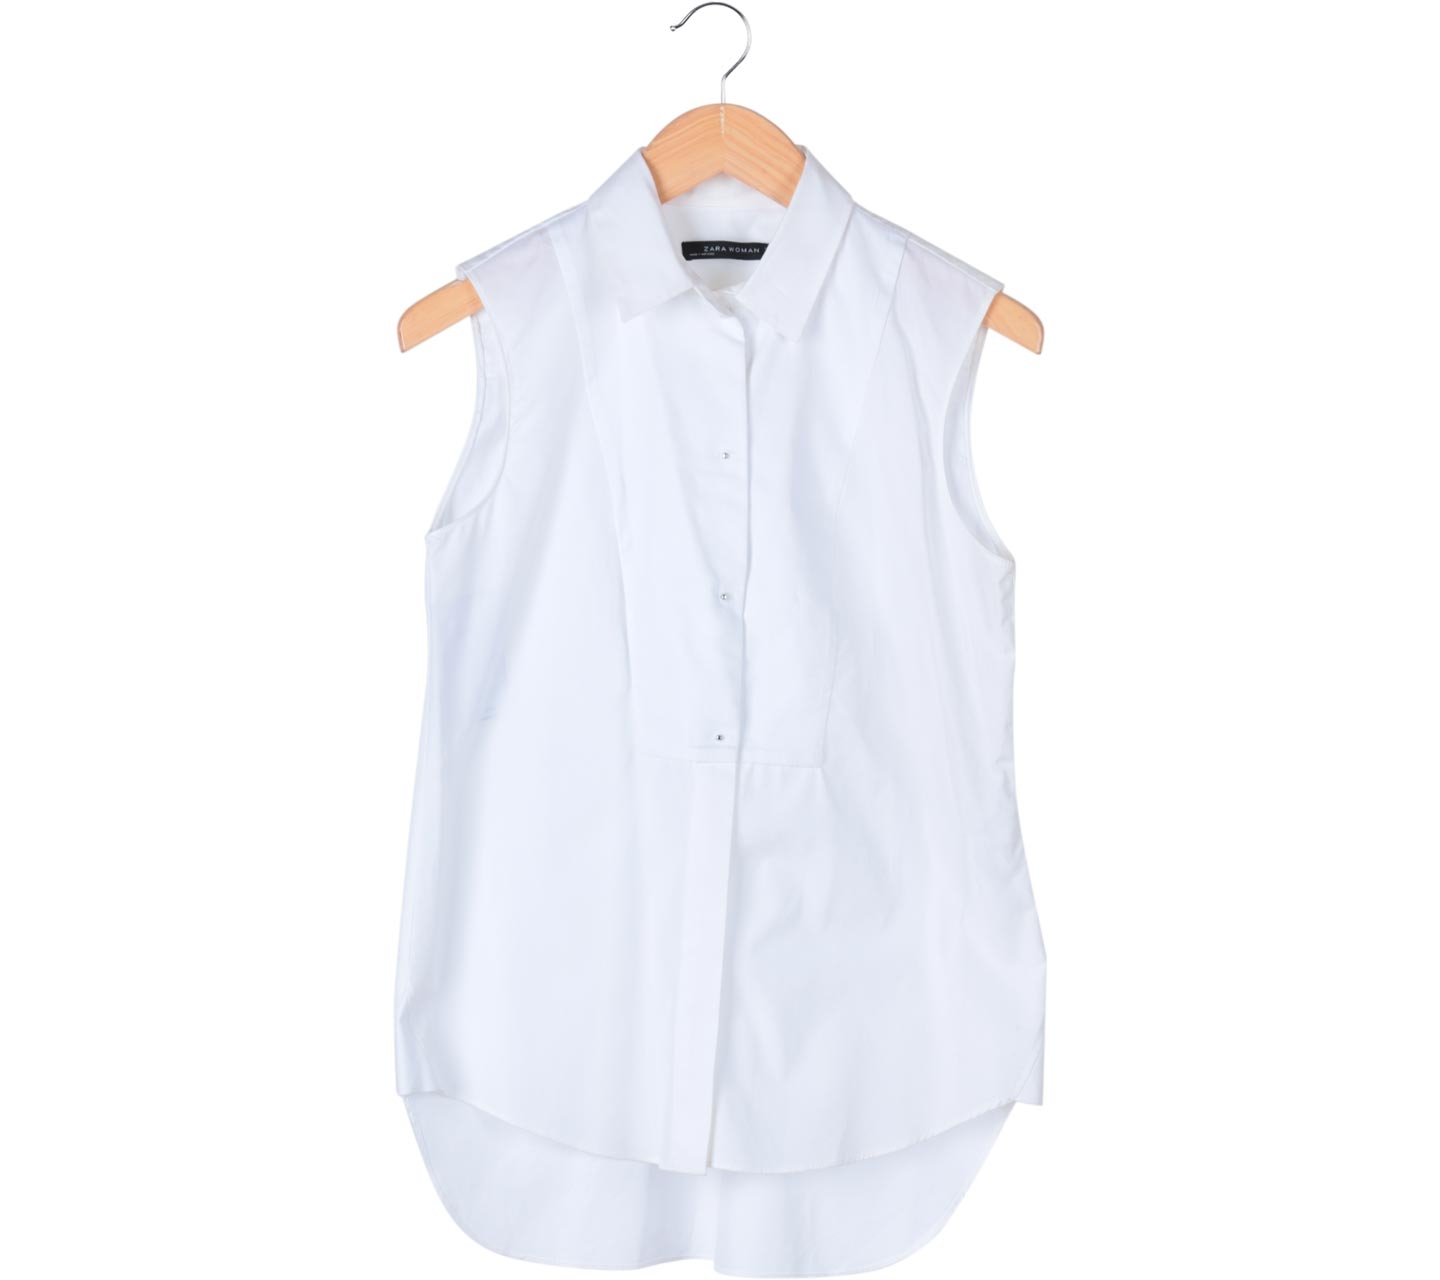 Zara White Sleeveless Shirt